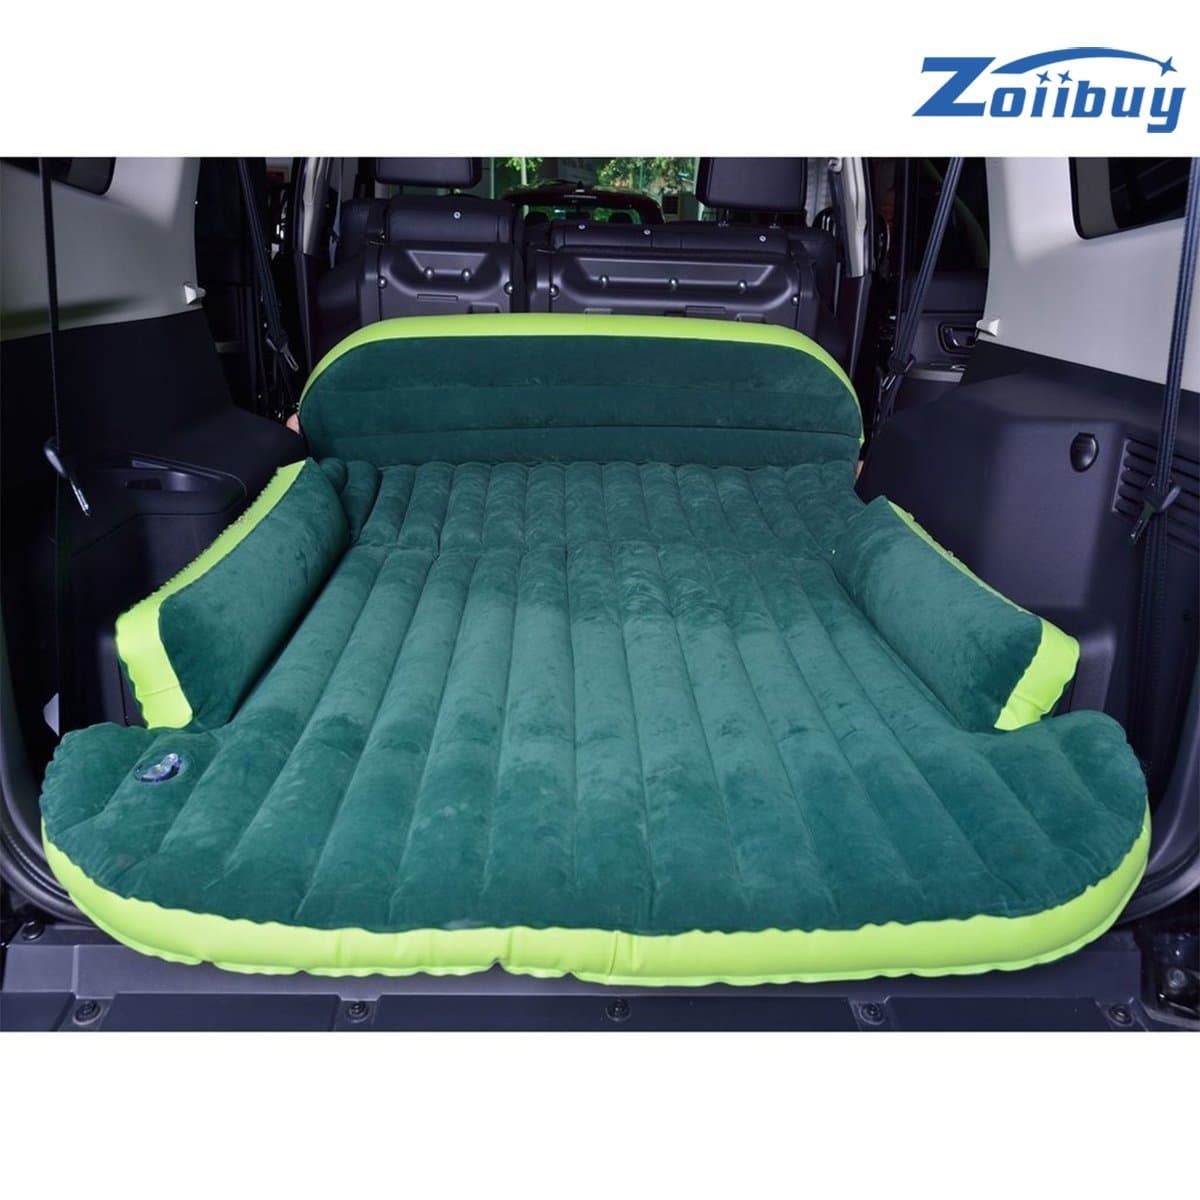 Zoiibuy SUV Air mattress